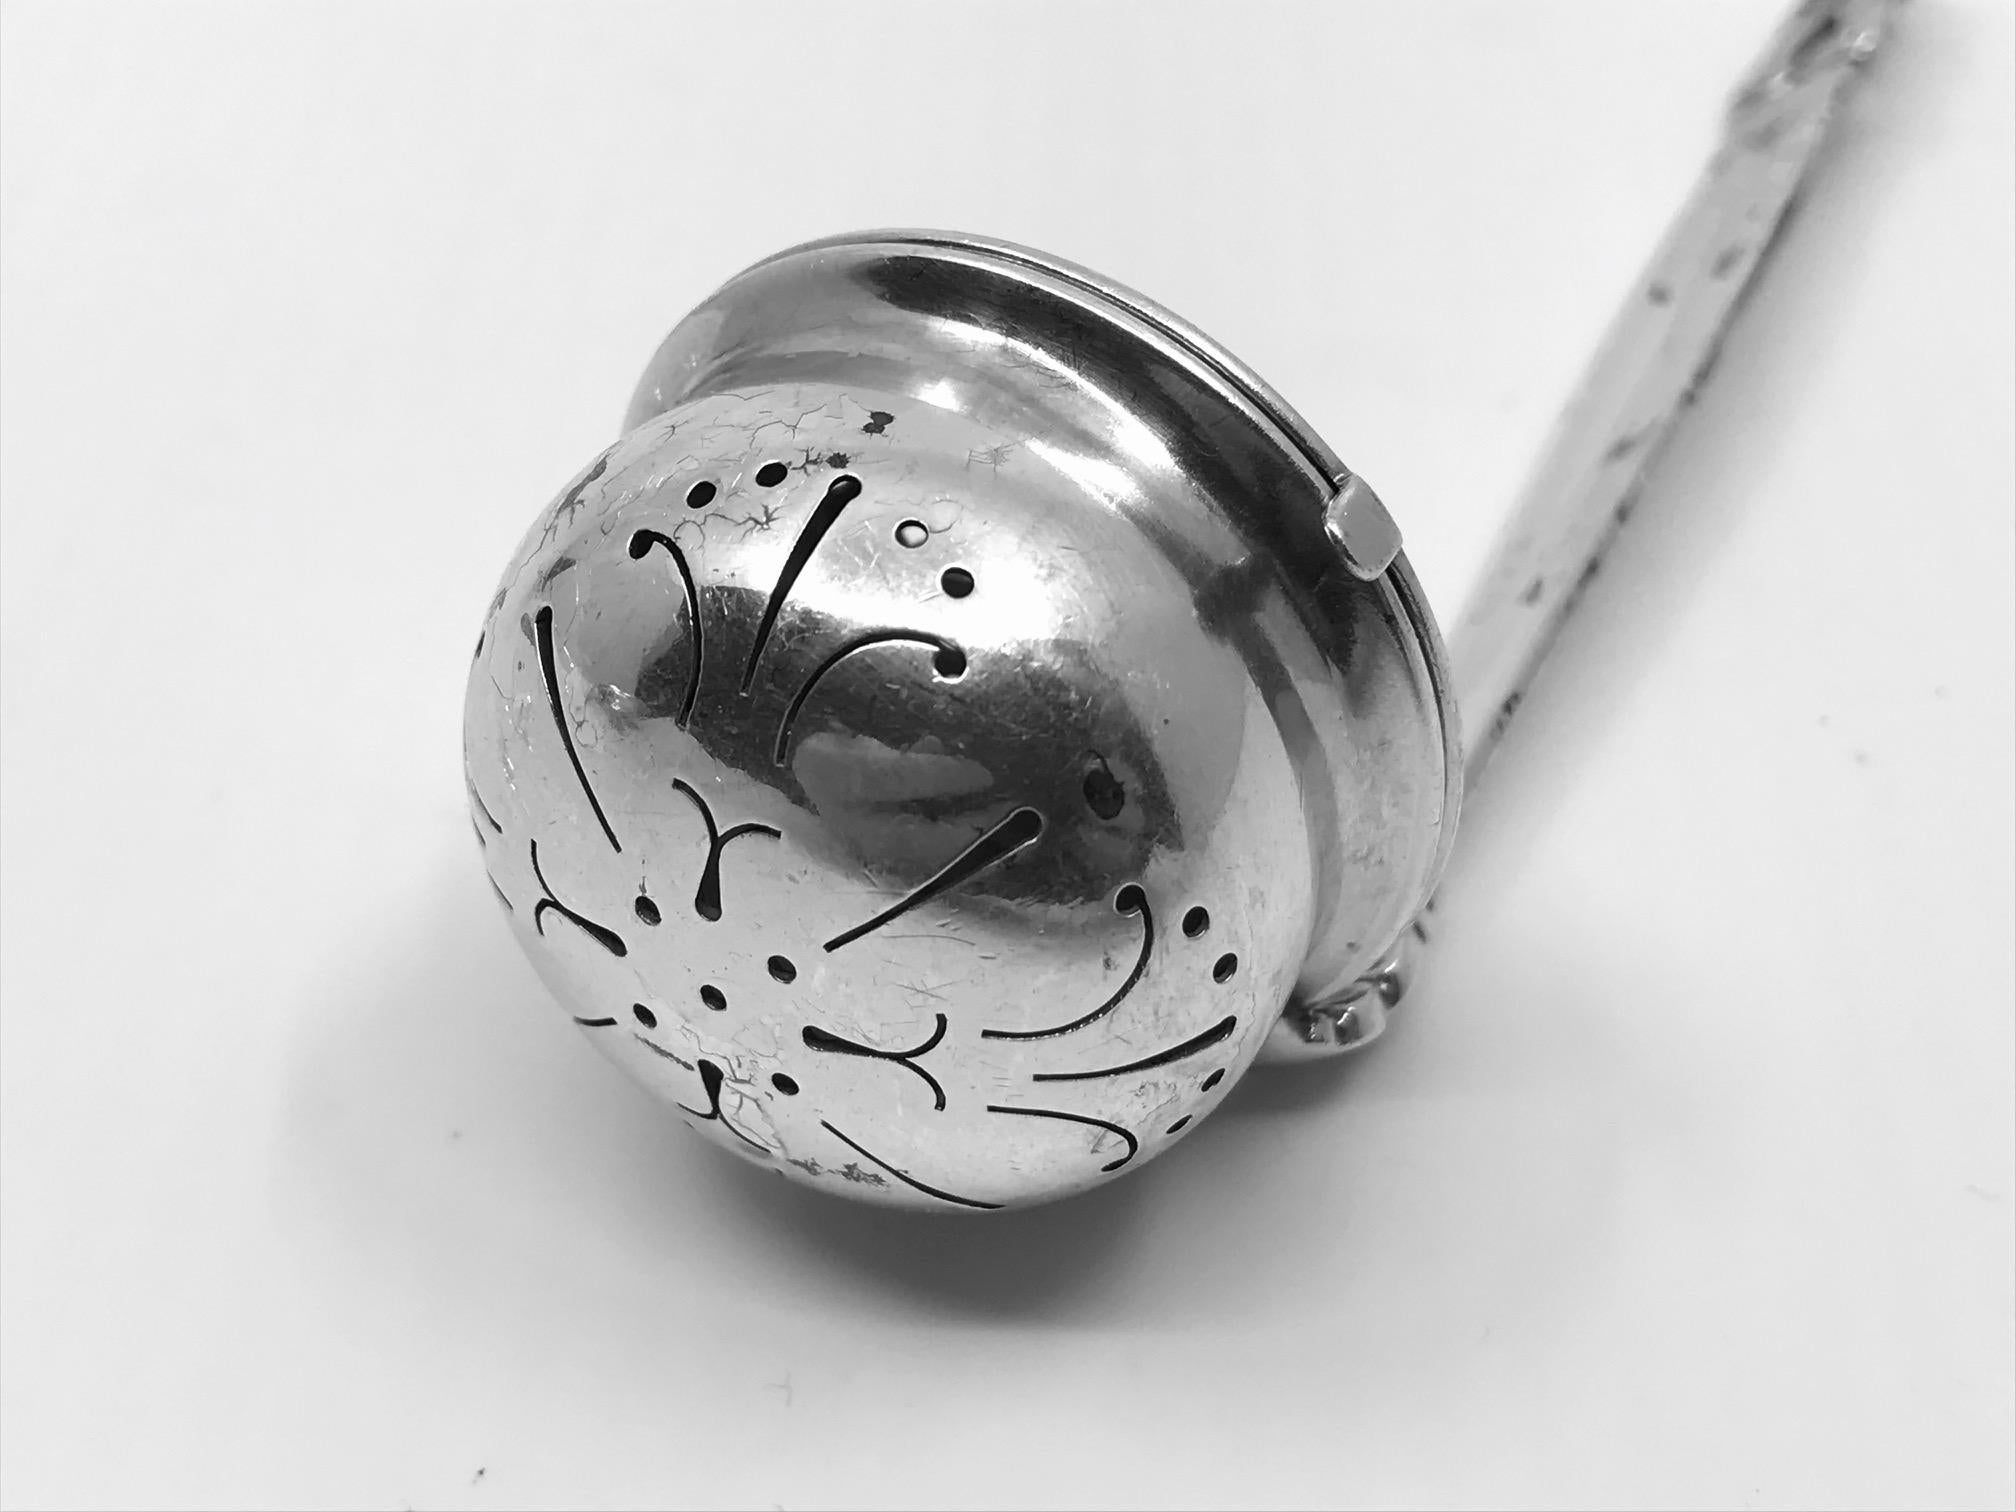 Ein dänisches Tee-Ei oder Tee-Ei von Georg Jensen mit dem ikonischen Eichel-Muster, Design #366 von Johan Rohde aus dem Jahr 1915. Ein schwer zu findendes und begehrtes Tee-Ei am Henkel. Sorgfältig ausgeschnittene Schale mit Scharnierdeckel, der an